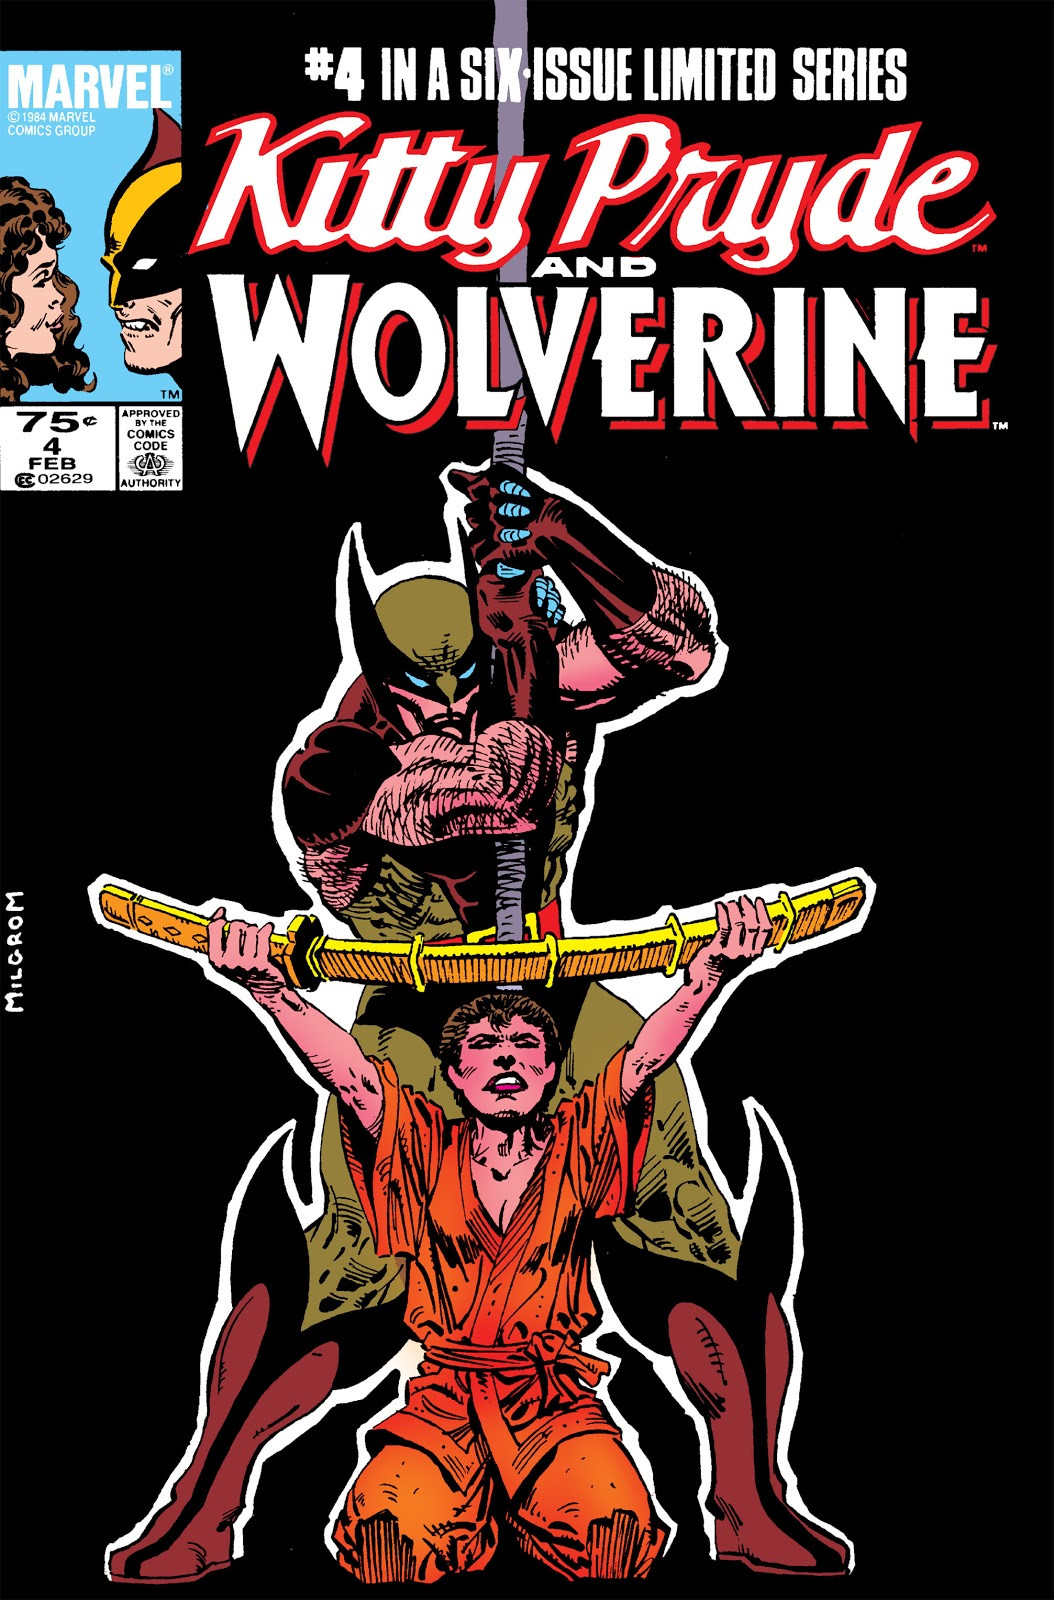 ¿Cual es tú personaje favorito de Marvel? - Página 6 Kitty_Pryde_and_Wolverine_Vol_1_4